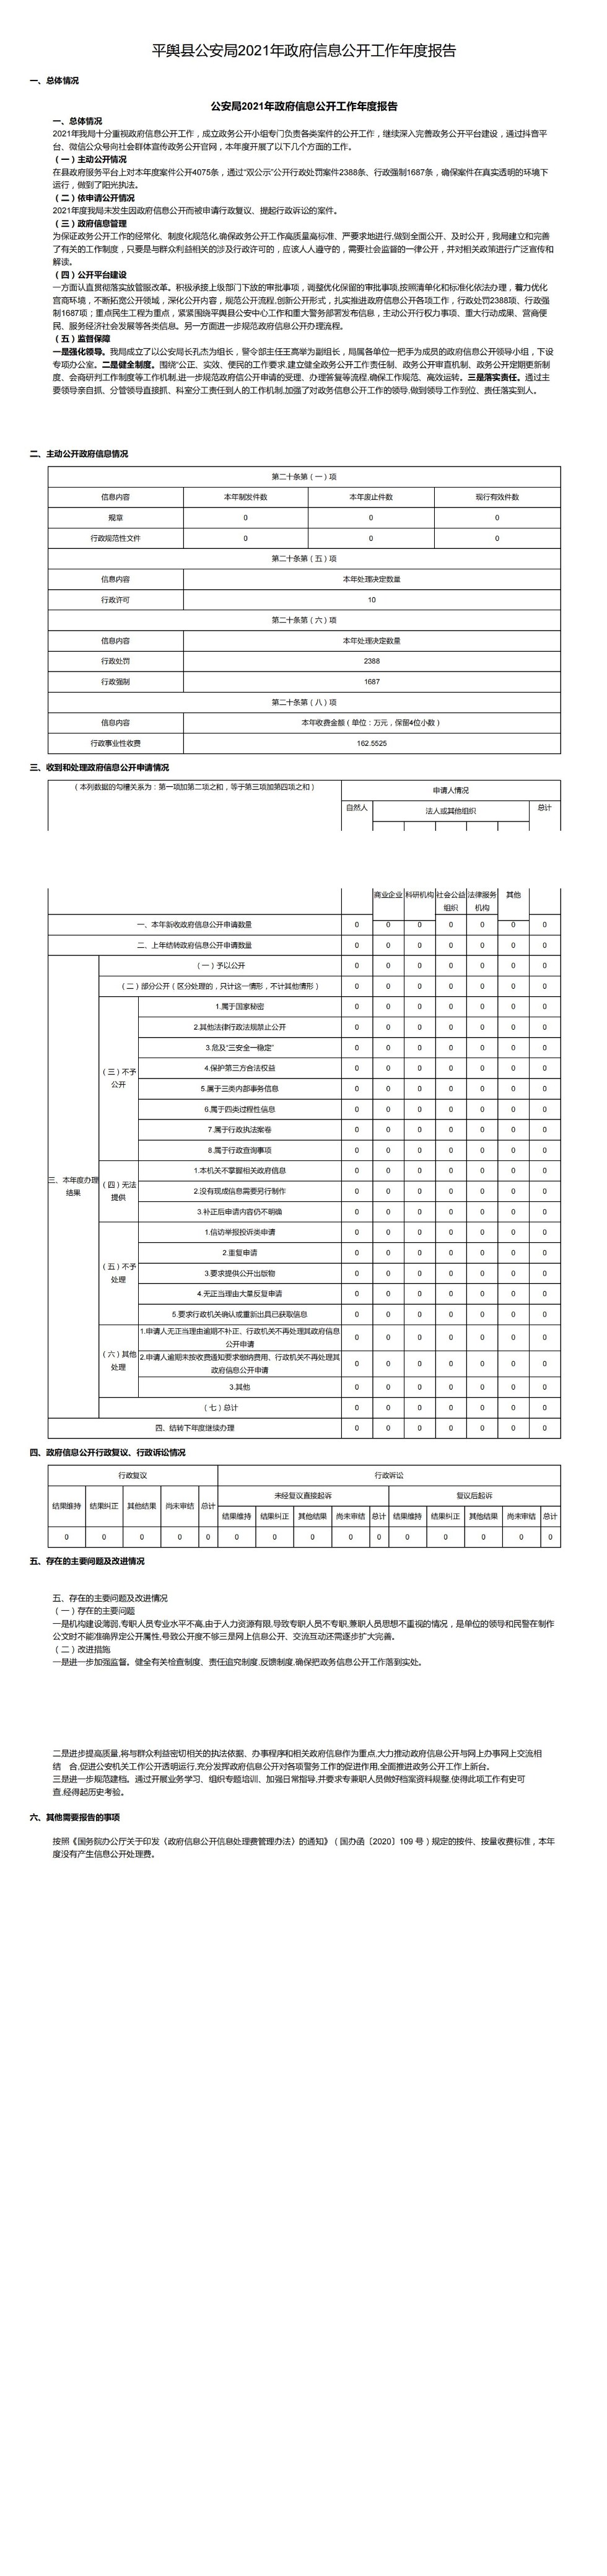 平舆县公安局2021年政府信息公开工作年度报告_00.jpg